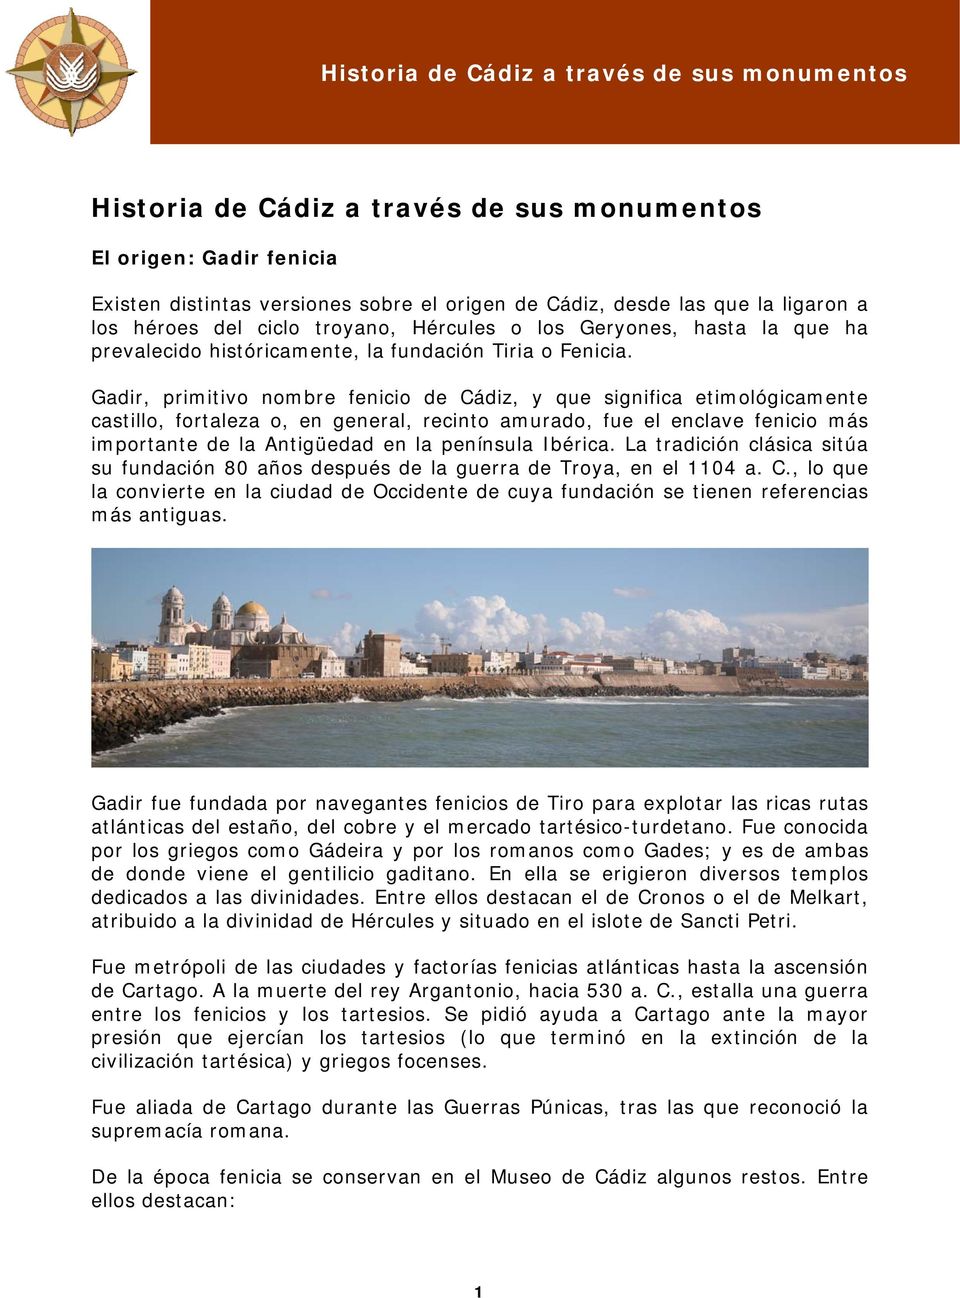 Gadir, primitivo nombre fenicio de Cádiz, y que significa etimológicamente castillo, fortaleza o, en general, recinto amurado, fue el enclave fenicio más importante de la Antigüedad en la península